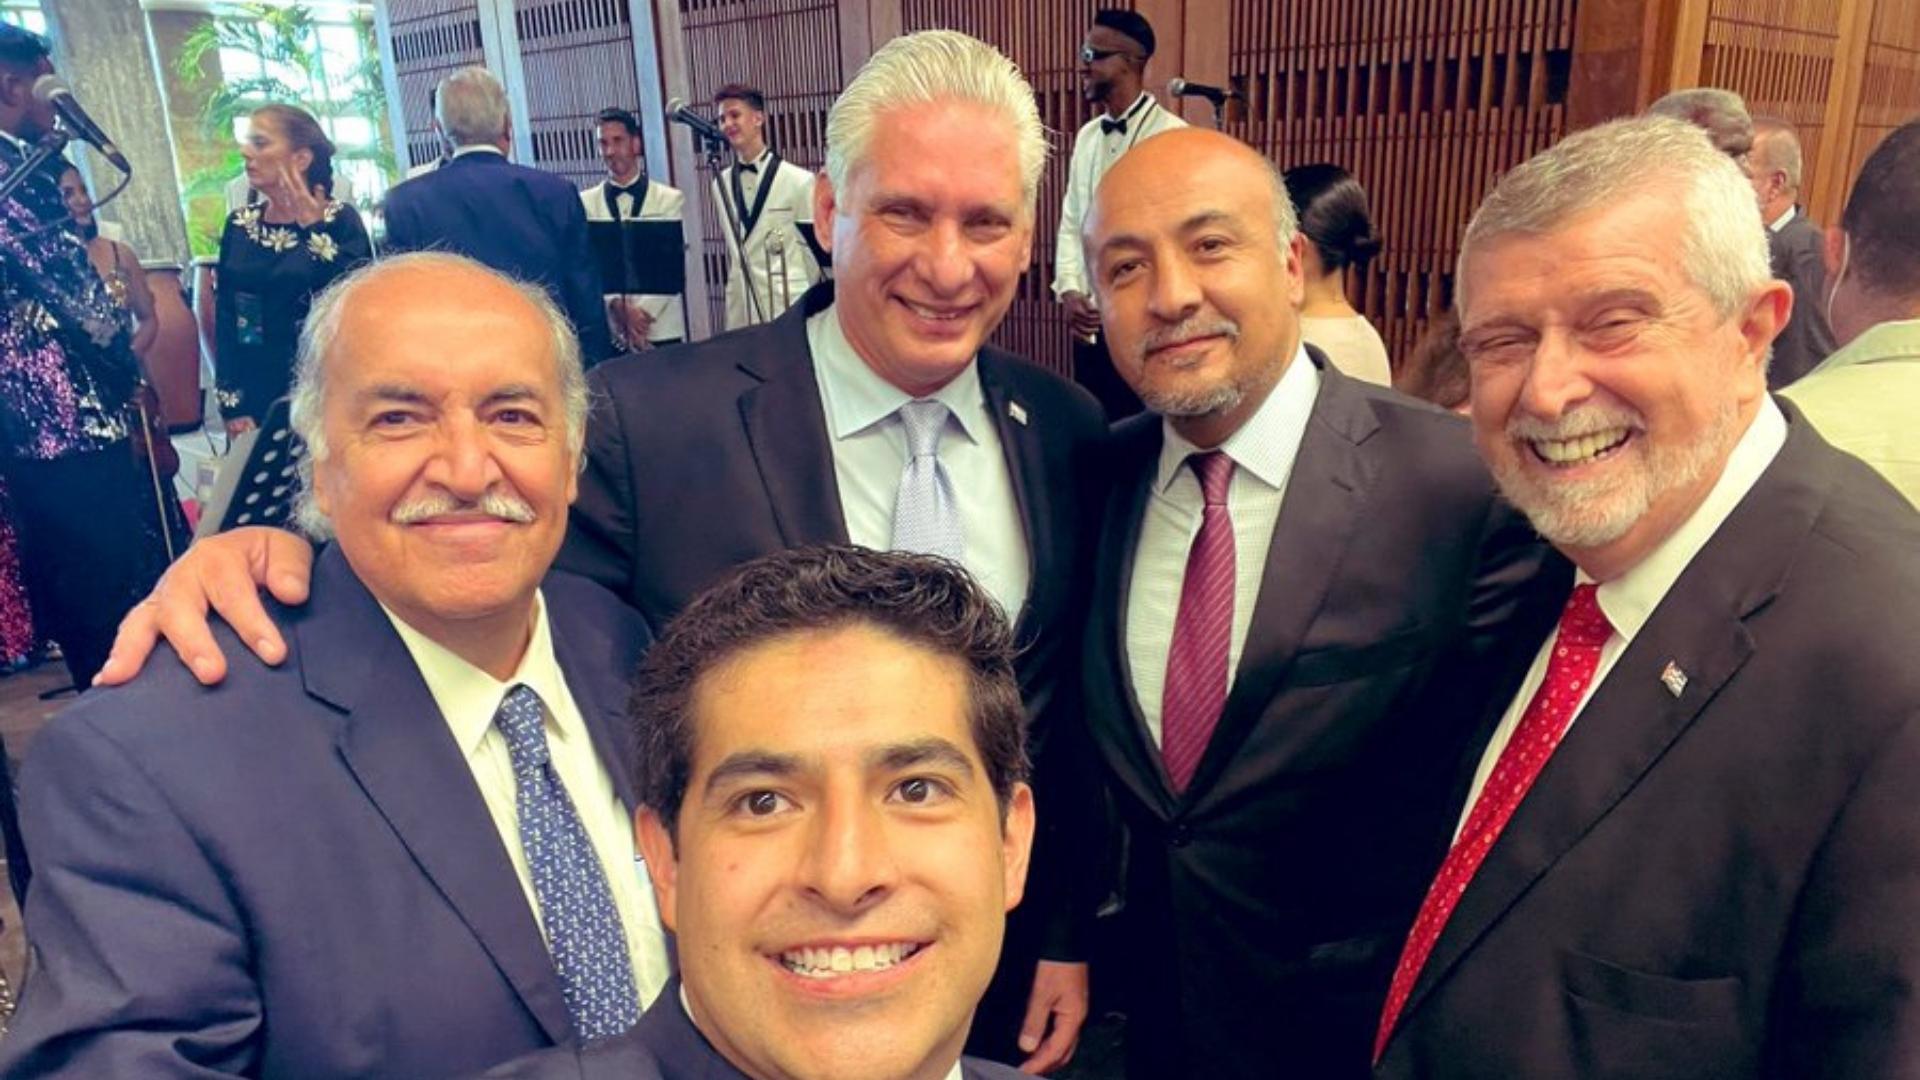 Díaz-Canel posando con funcionarios de México y Cuba durante fiesta para AMLO. Foto: Twitter de Martín Borrego Llorente